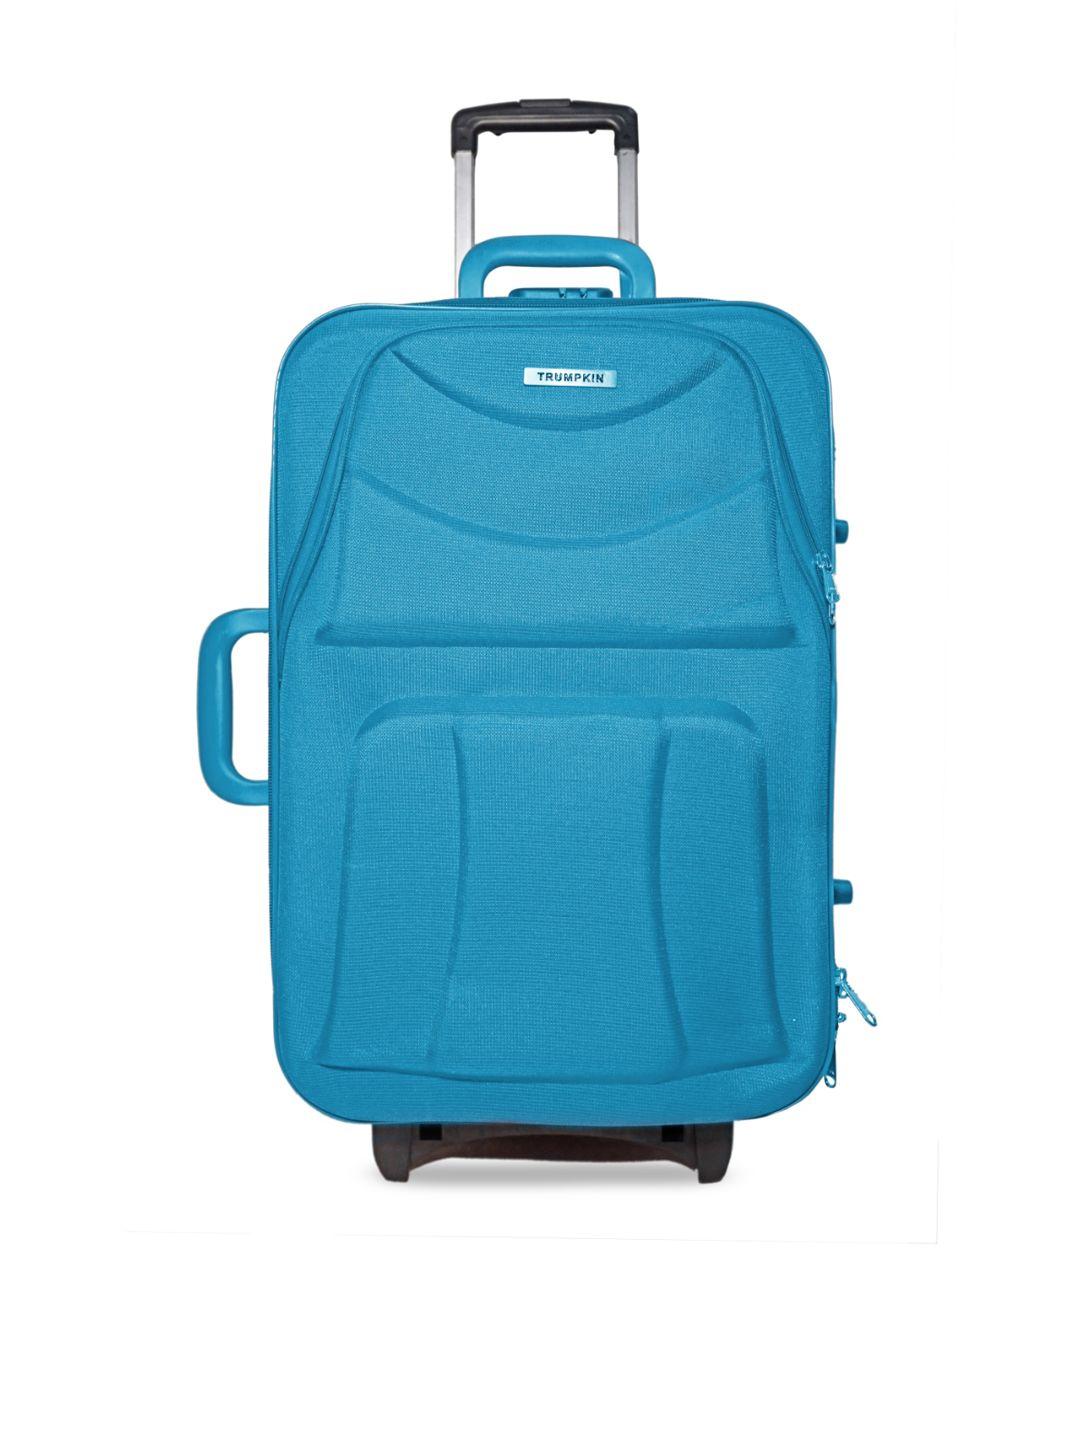 trumpkin blue soft-sided medium trolley duffle bag